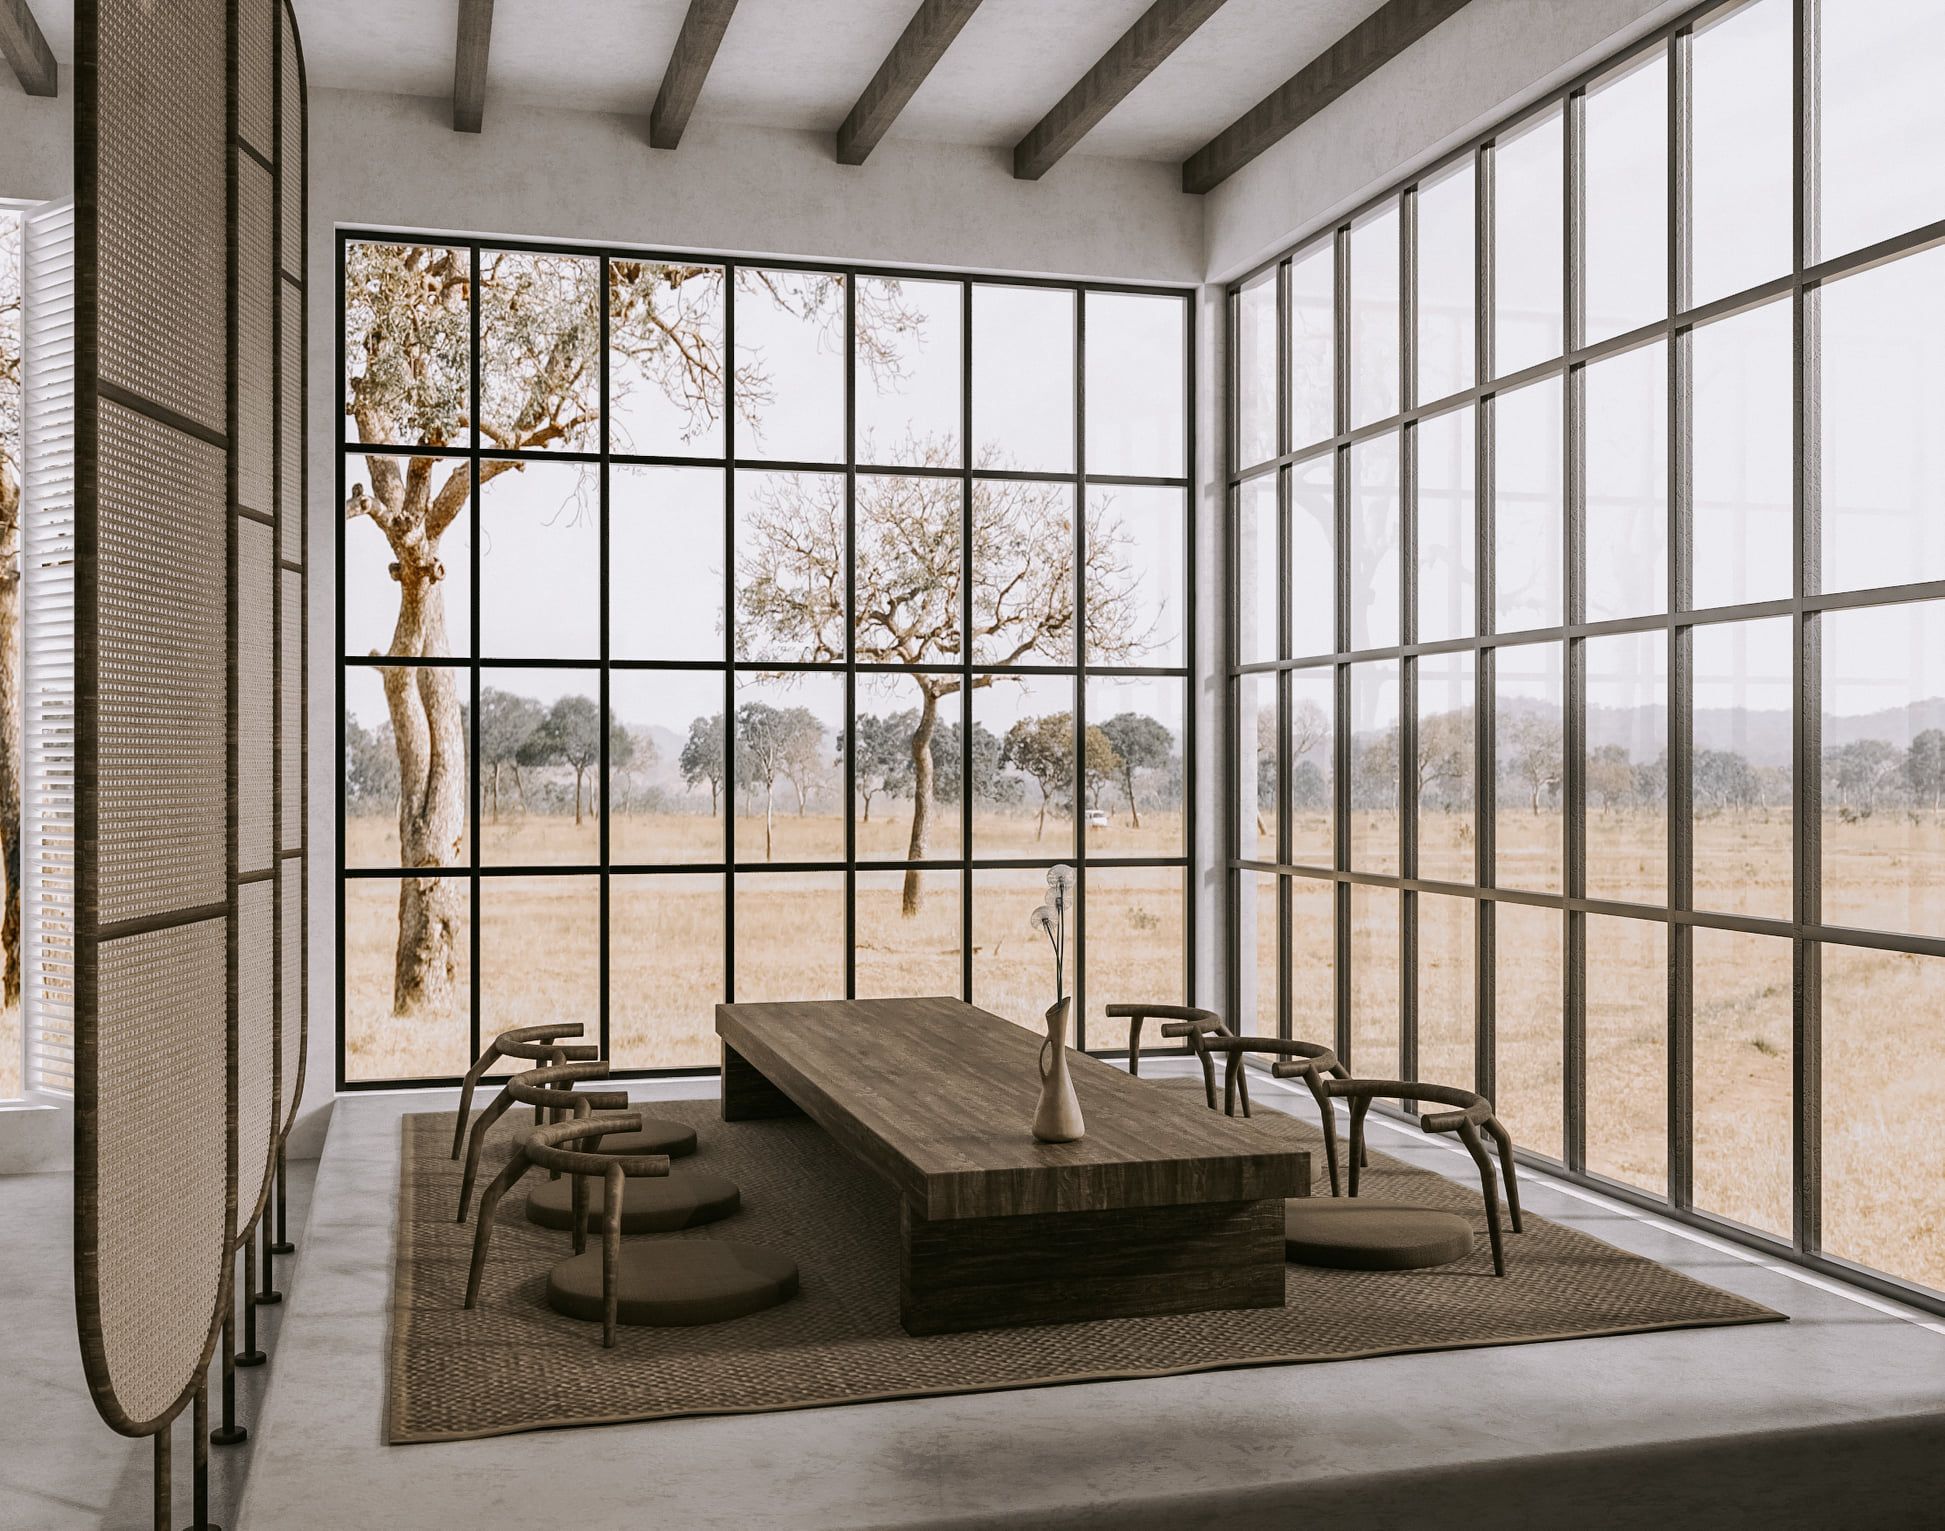 3D Interior Model Living room 0439 Scene 3dsmax